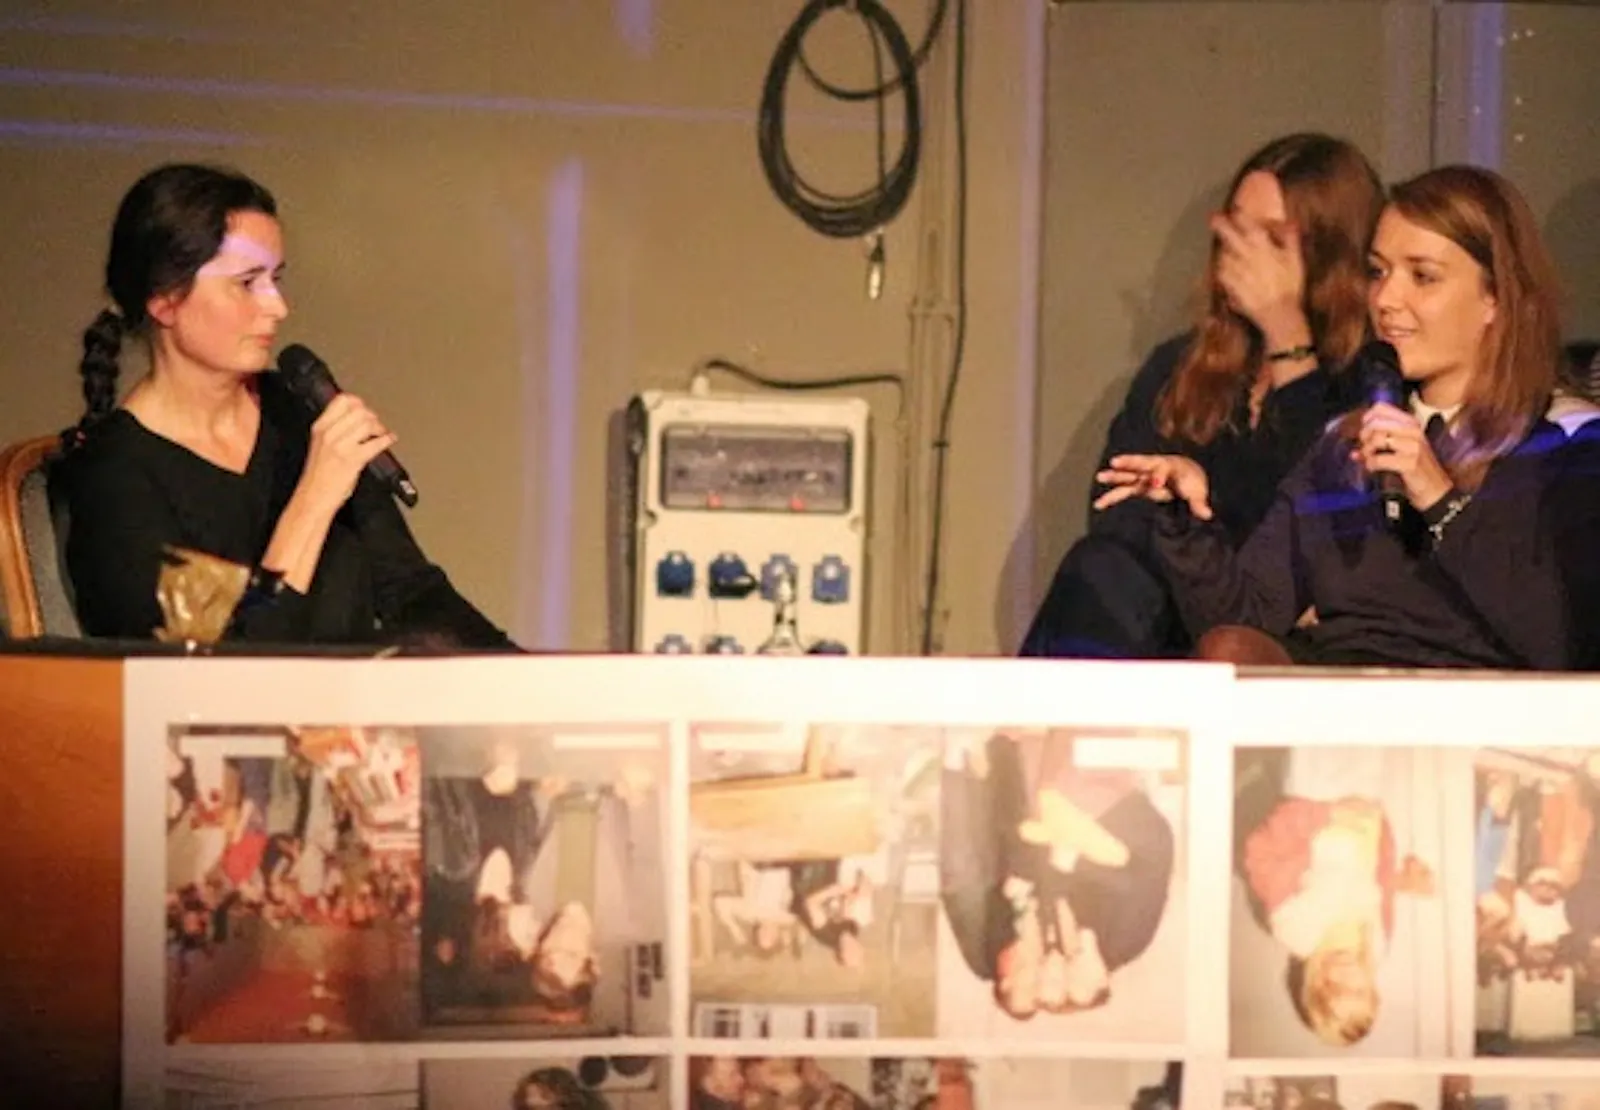 Christiane Frohmann, Diana Weis und Julia Schramm auf einer Bühne